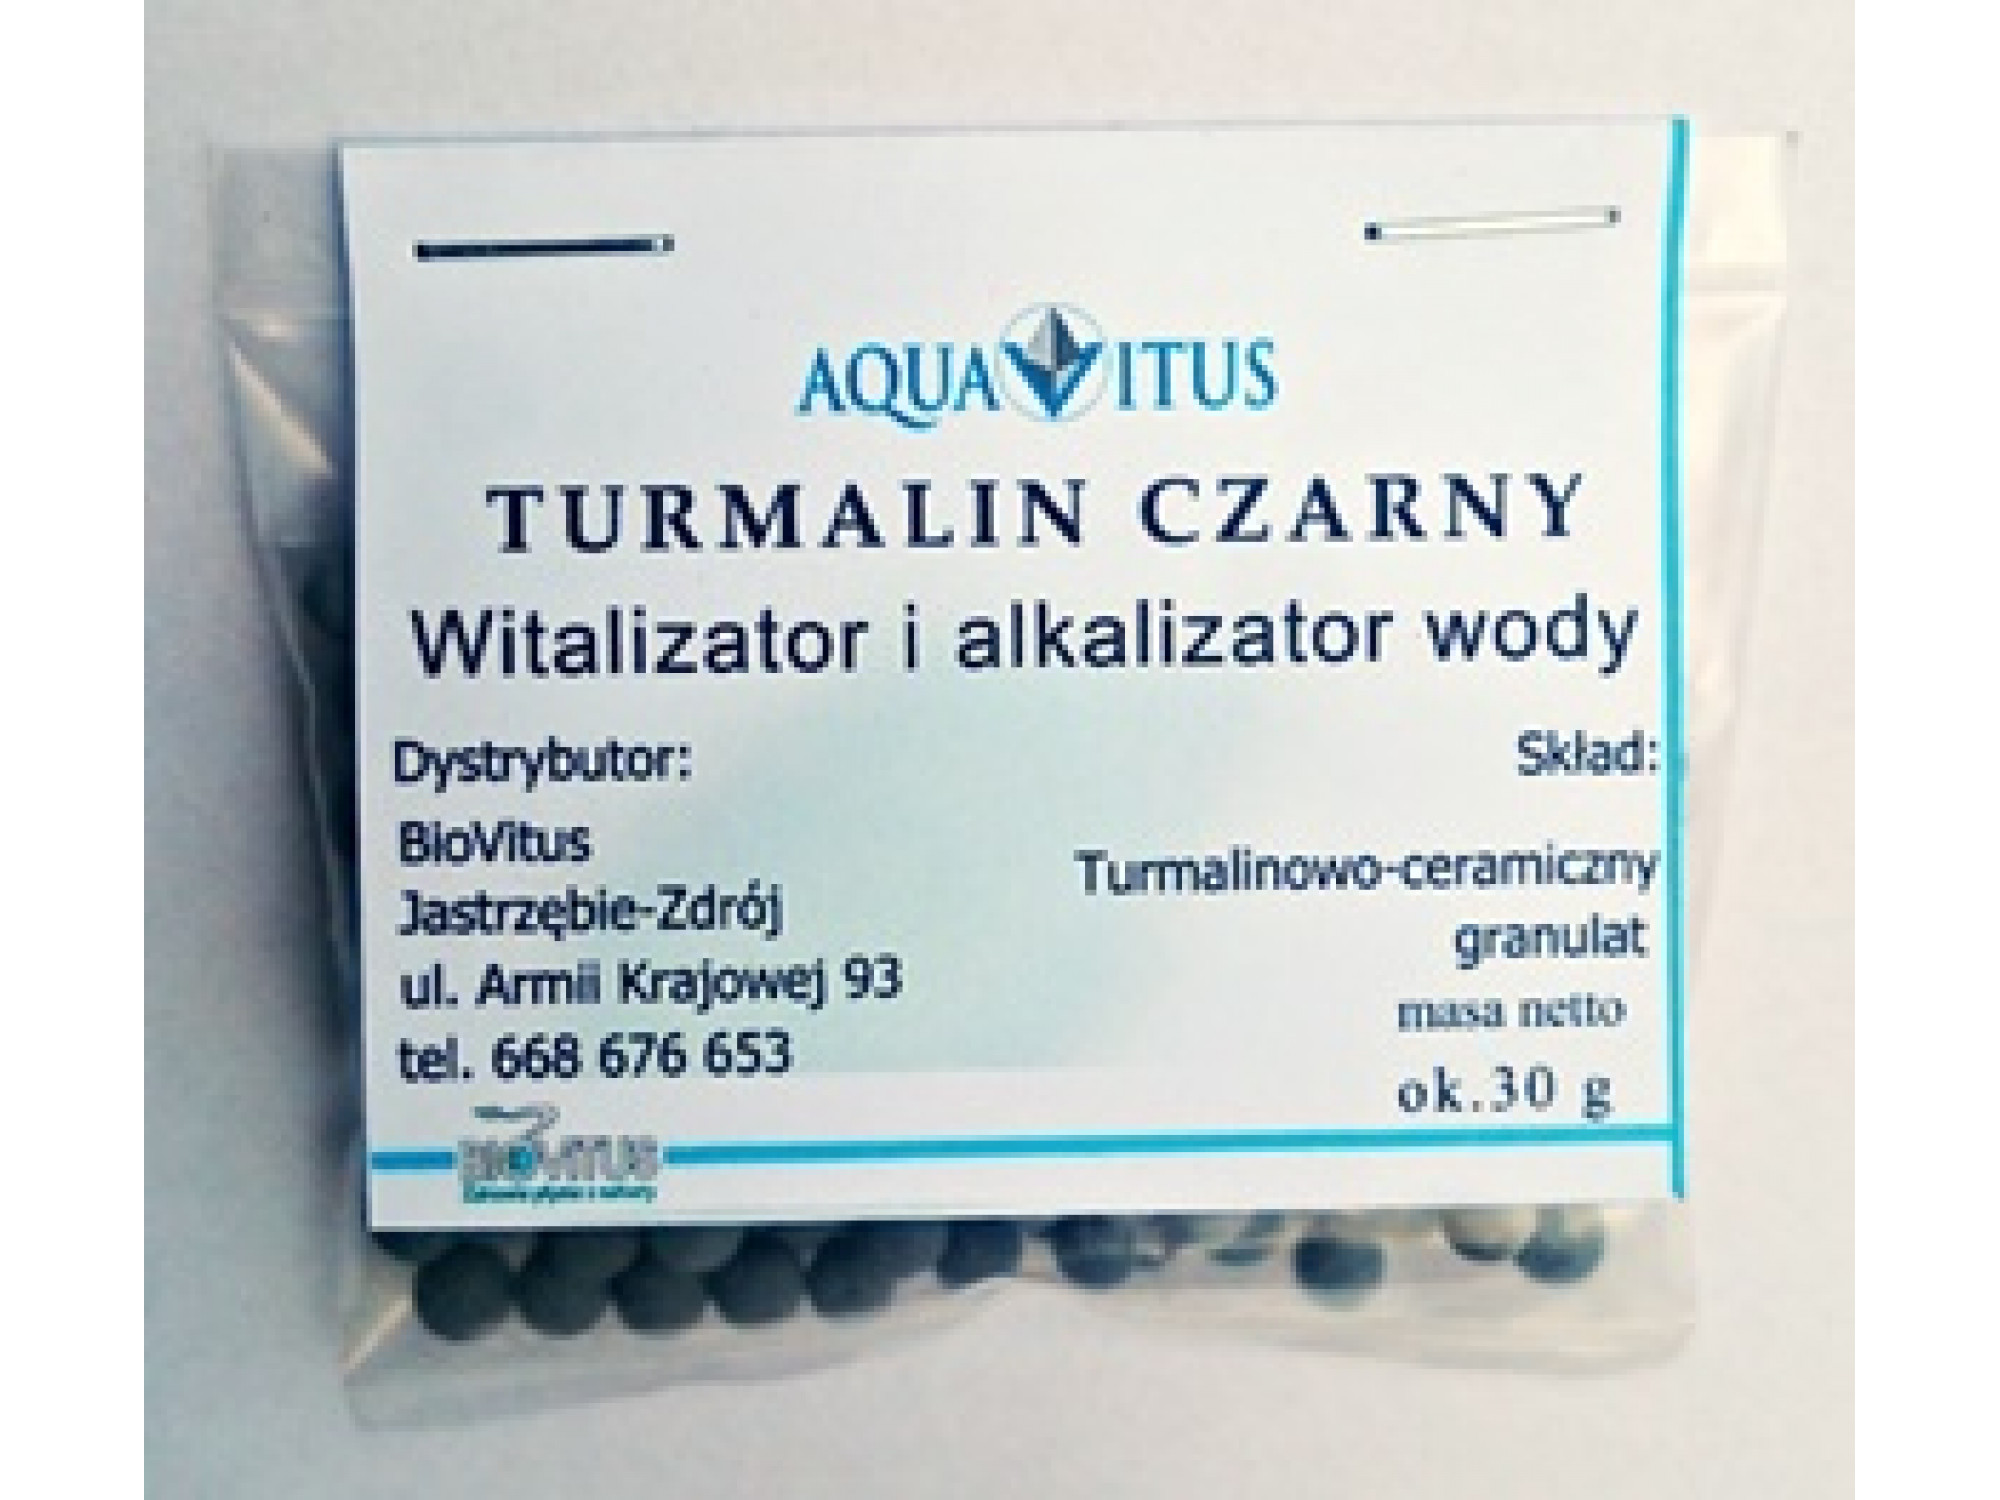 Turmalin Czarny 30g (Wielofunkcyjny, alkalizujący granulat turmalinowo-ceramiczny)